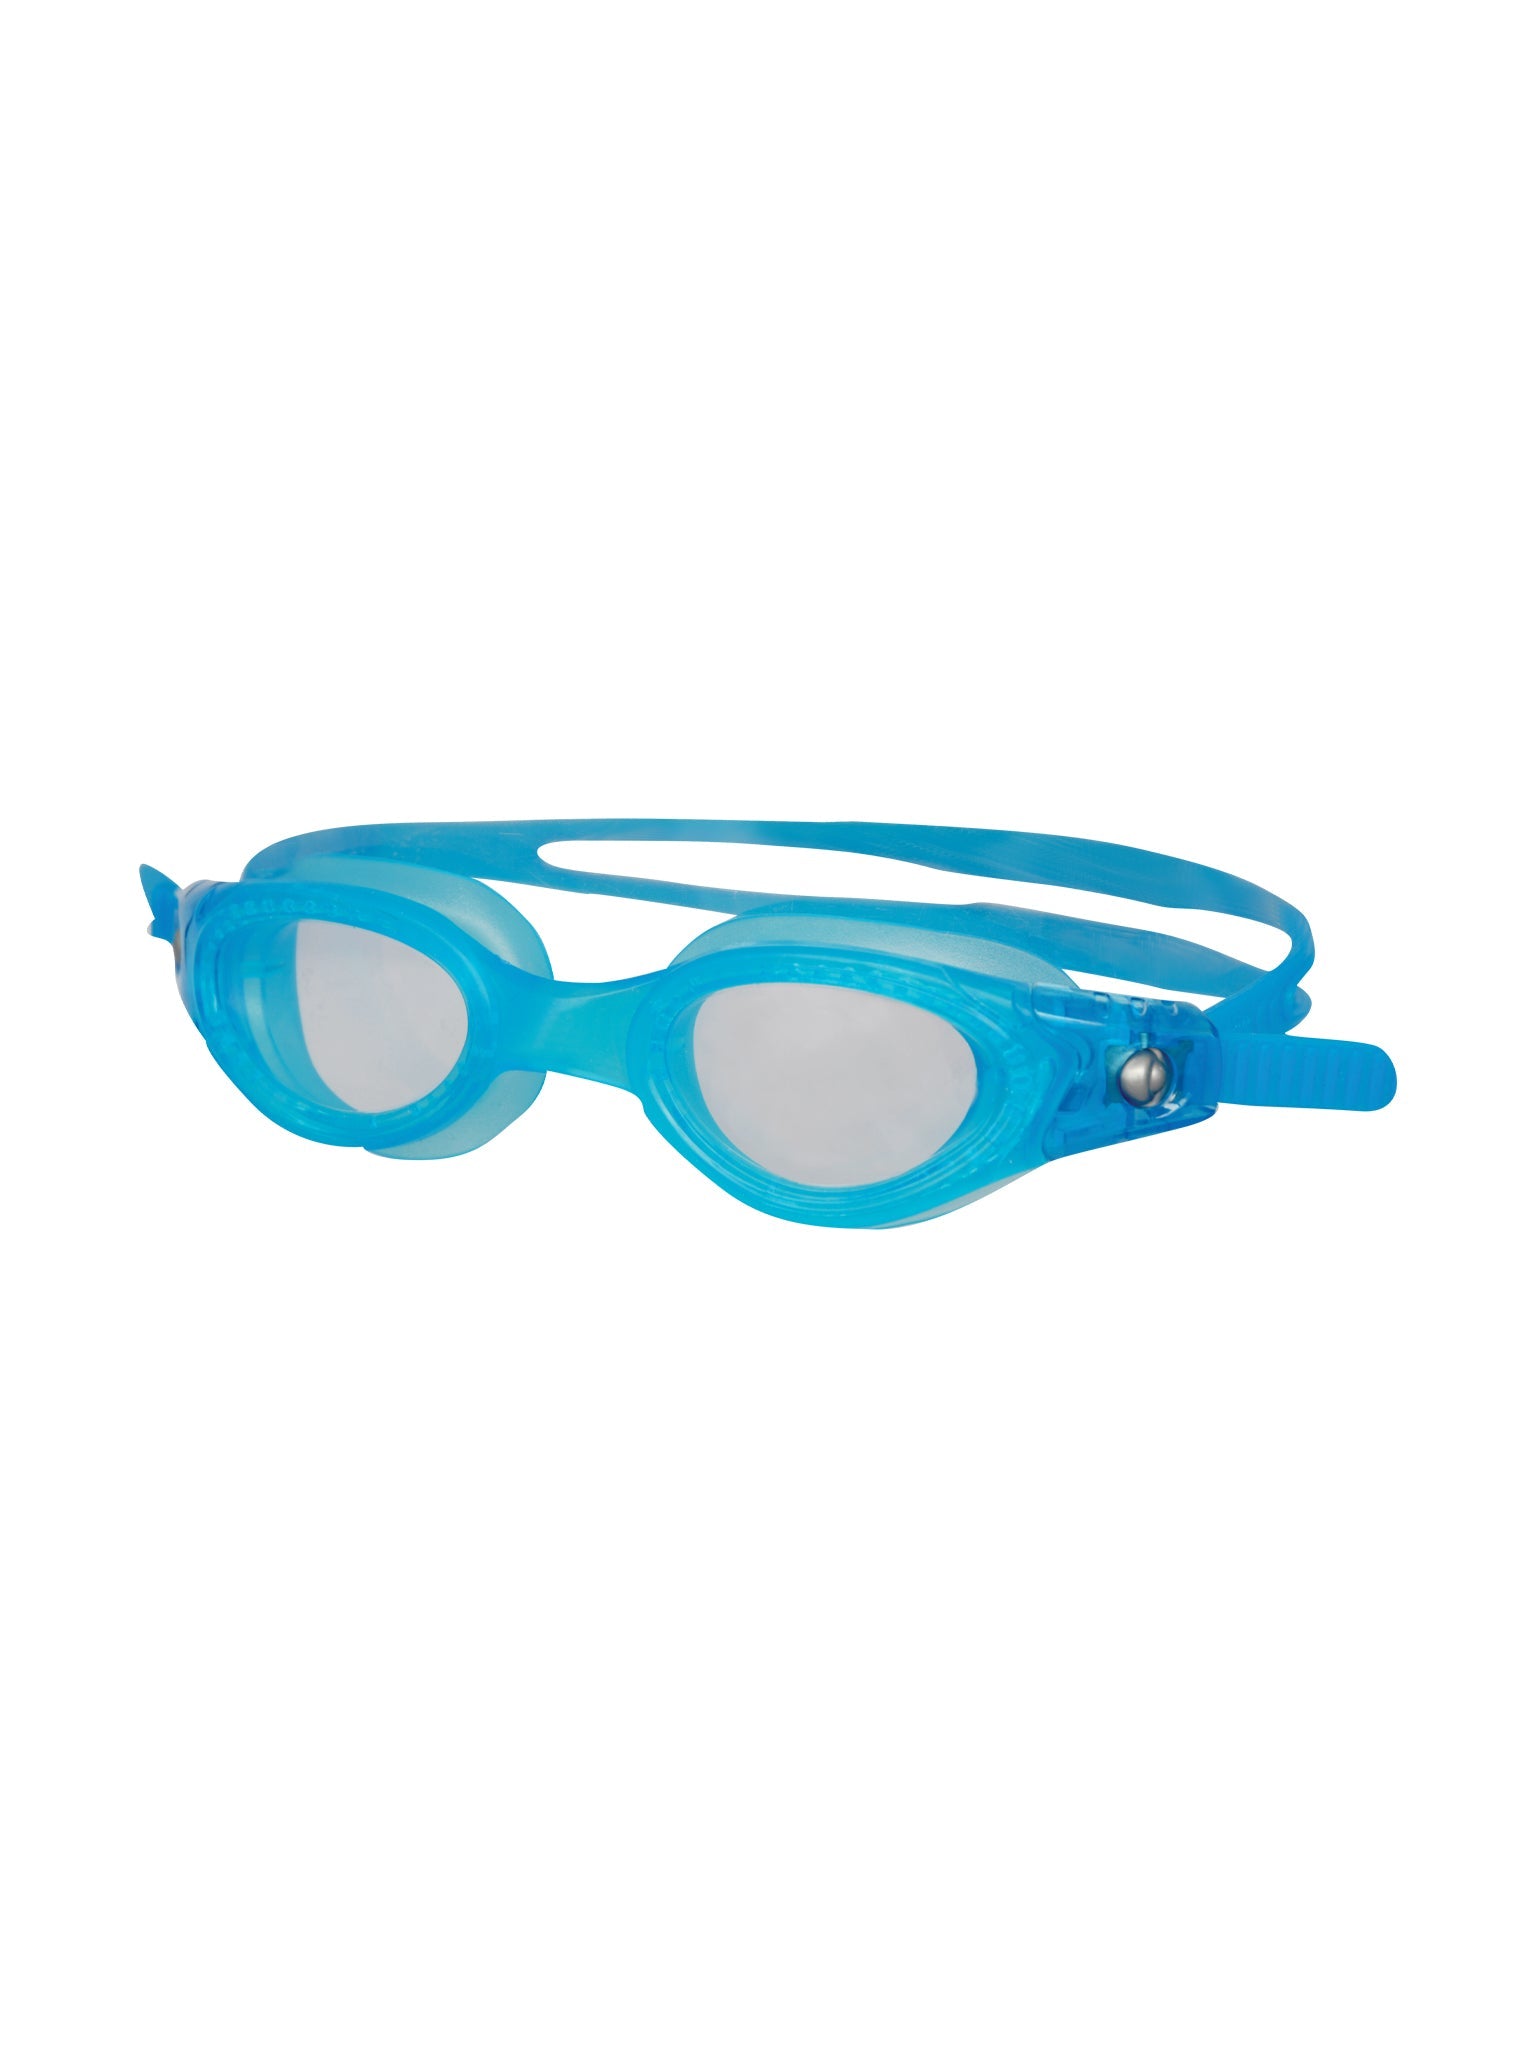 Lunettes de natation Pacifica Junior - Bleu/Clair